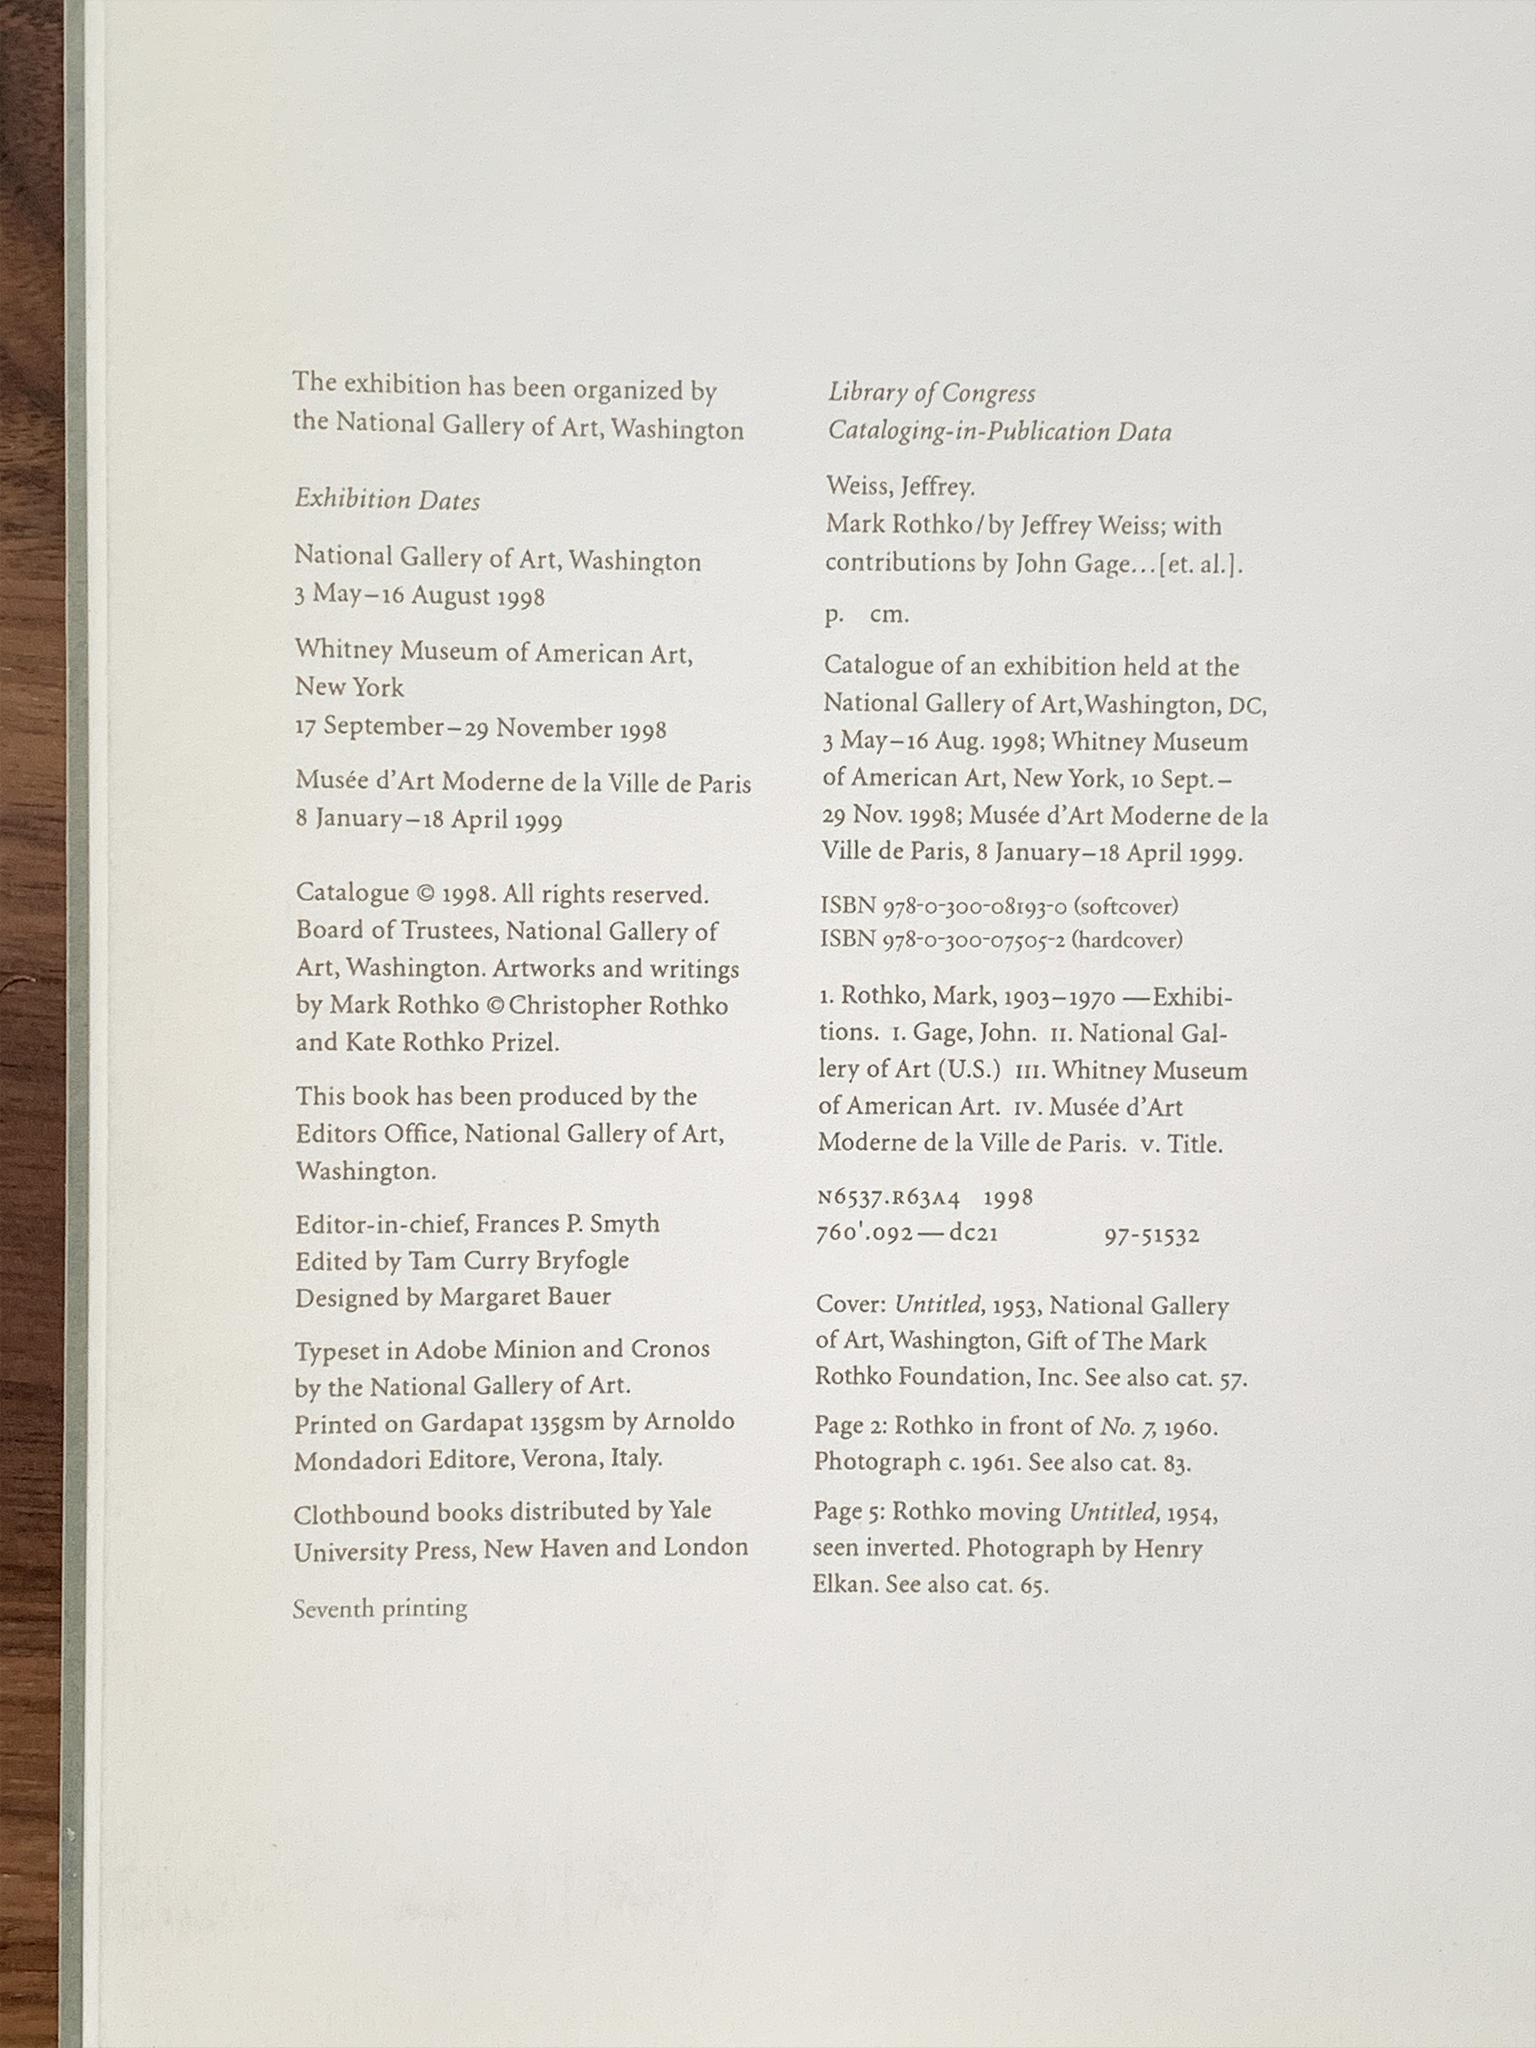 20th Century Mark Rothko Painting Retrospective Exhibition Catalogue